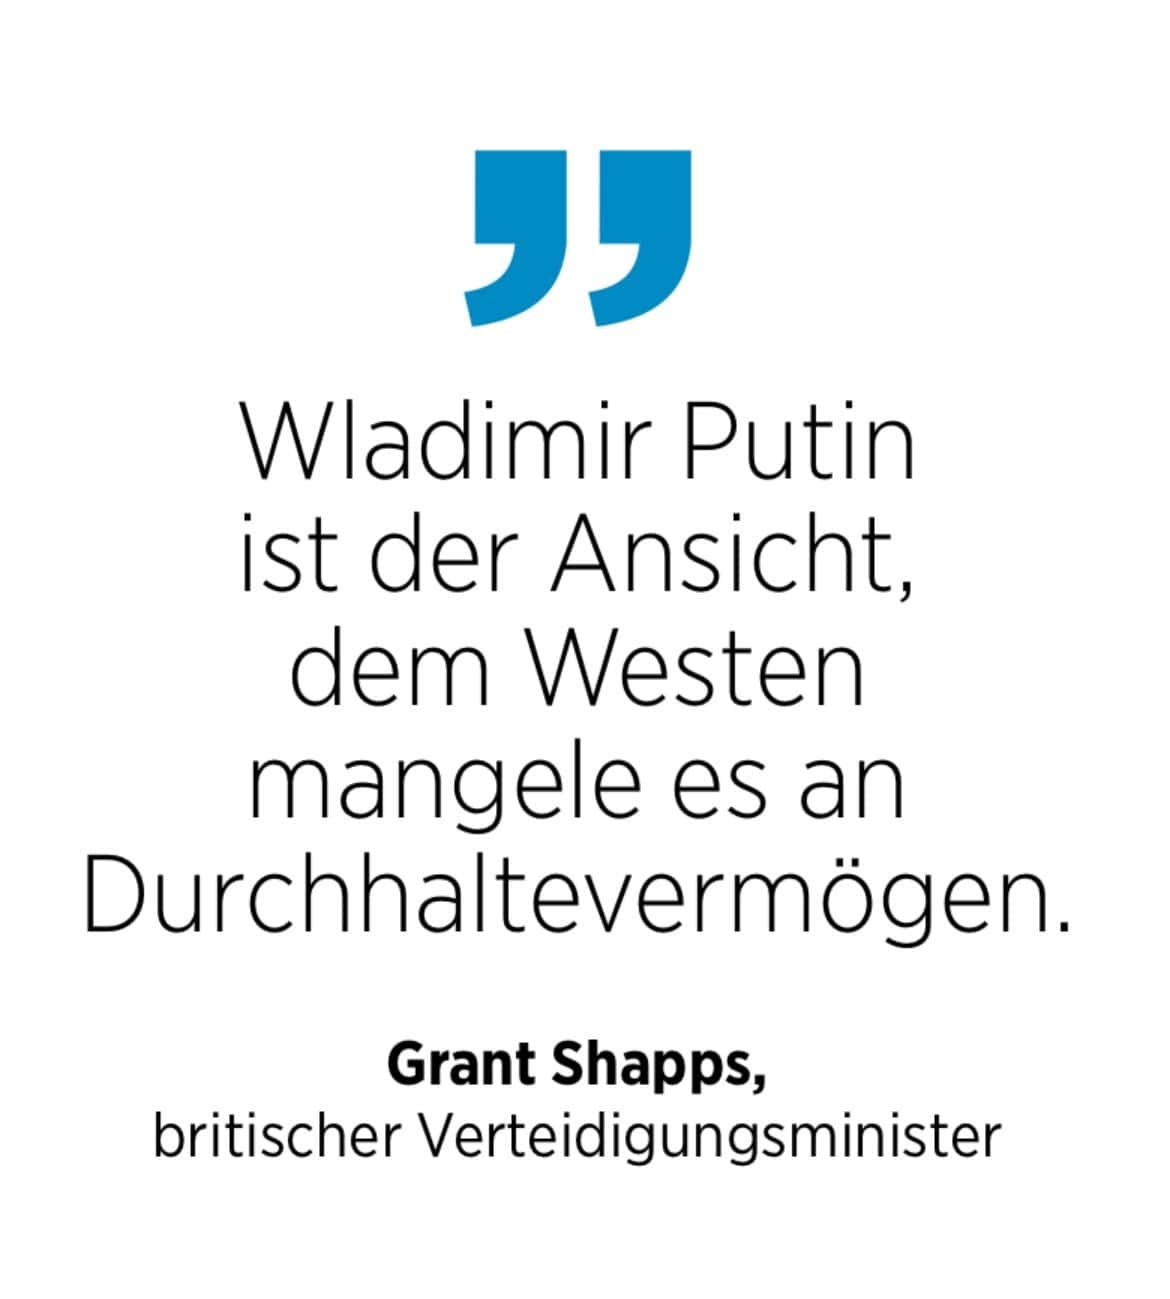 Grant Shapps, britischer Verteidigungsminister: Wladimir Putin ist der Ansicht, dem Westen mangele es an Durchhaltevermögen.